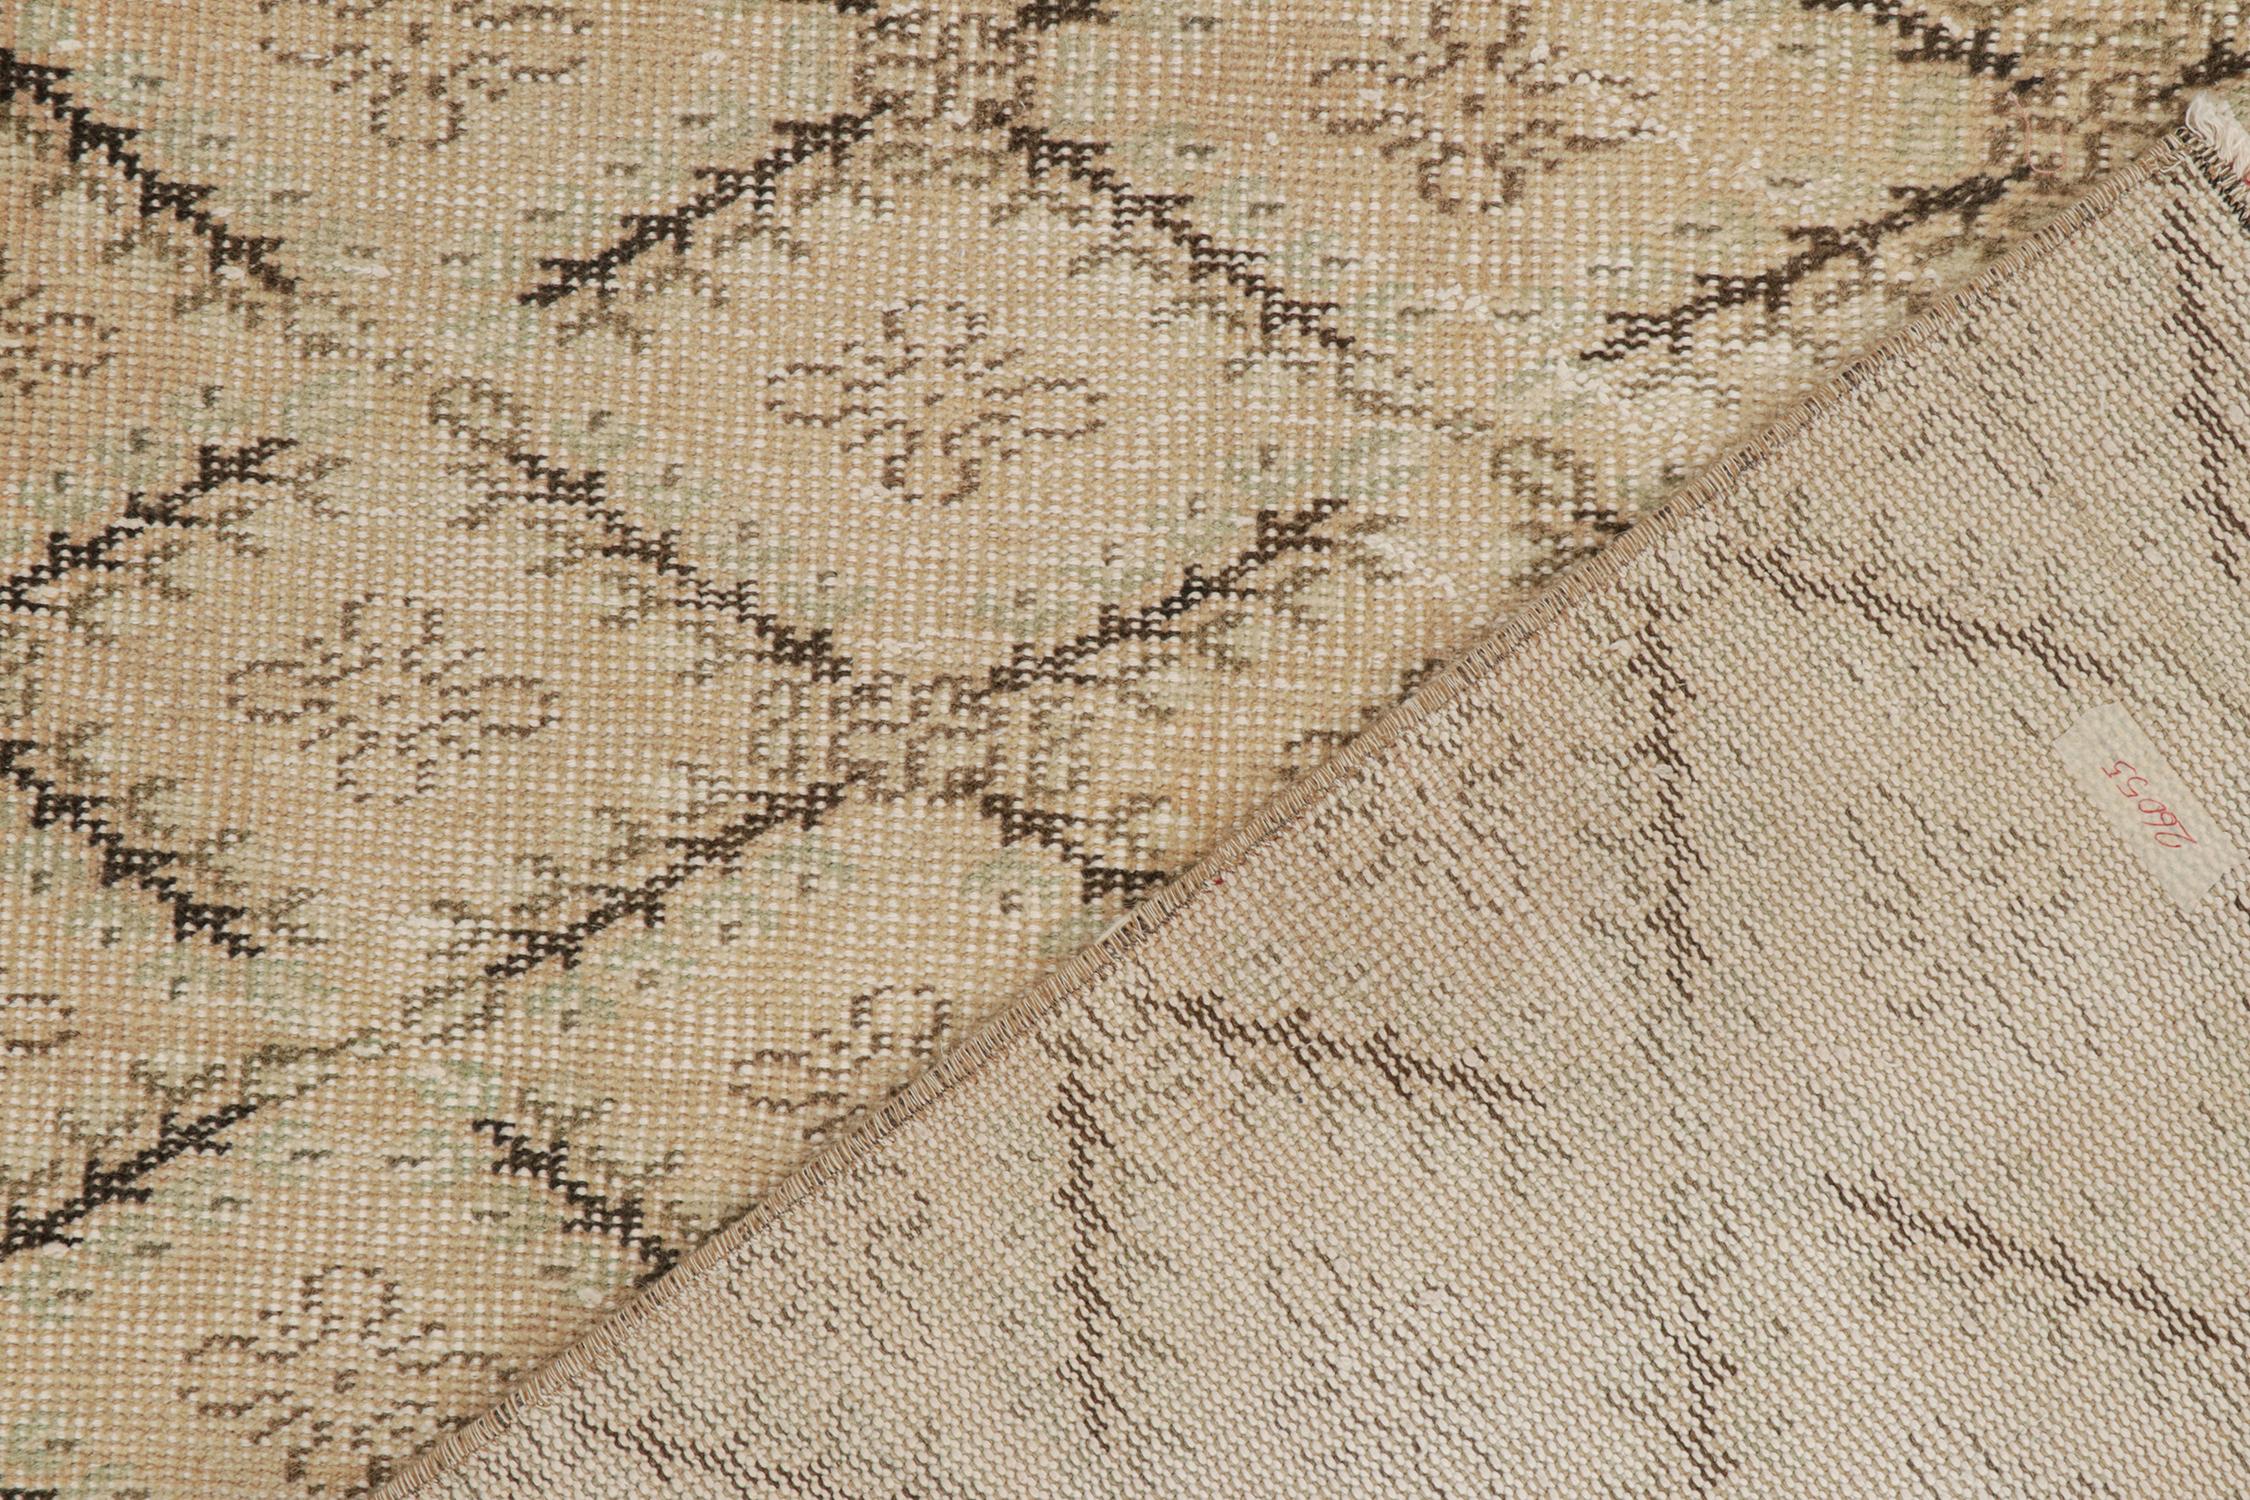 Mid-20th Century Vintage Zeki Müren Rug in Beige-Brown Geometric Patterns, by Rug & Kilim